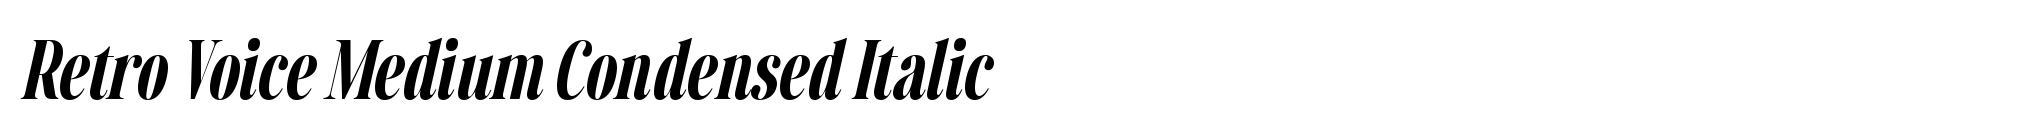 Retro Voice Medium Condensed Italic image